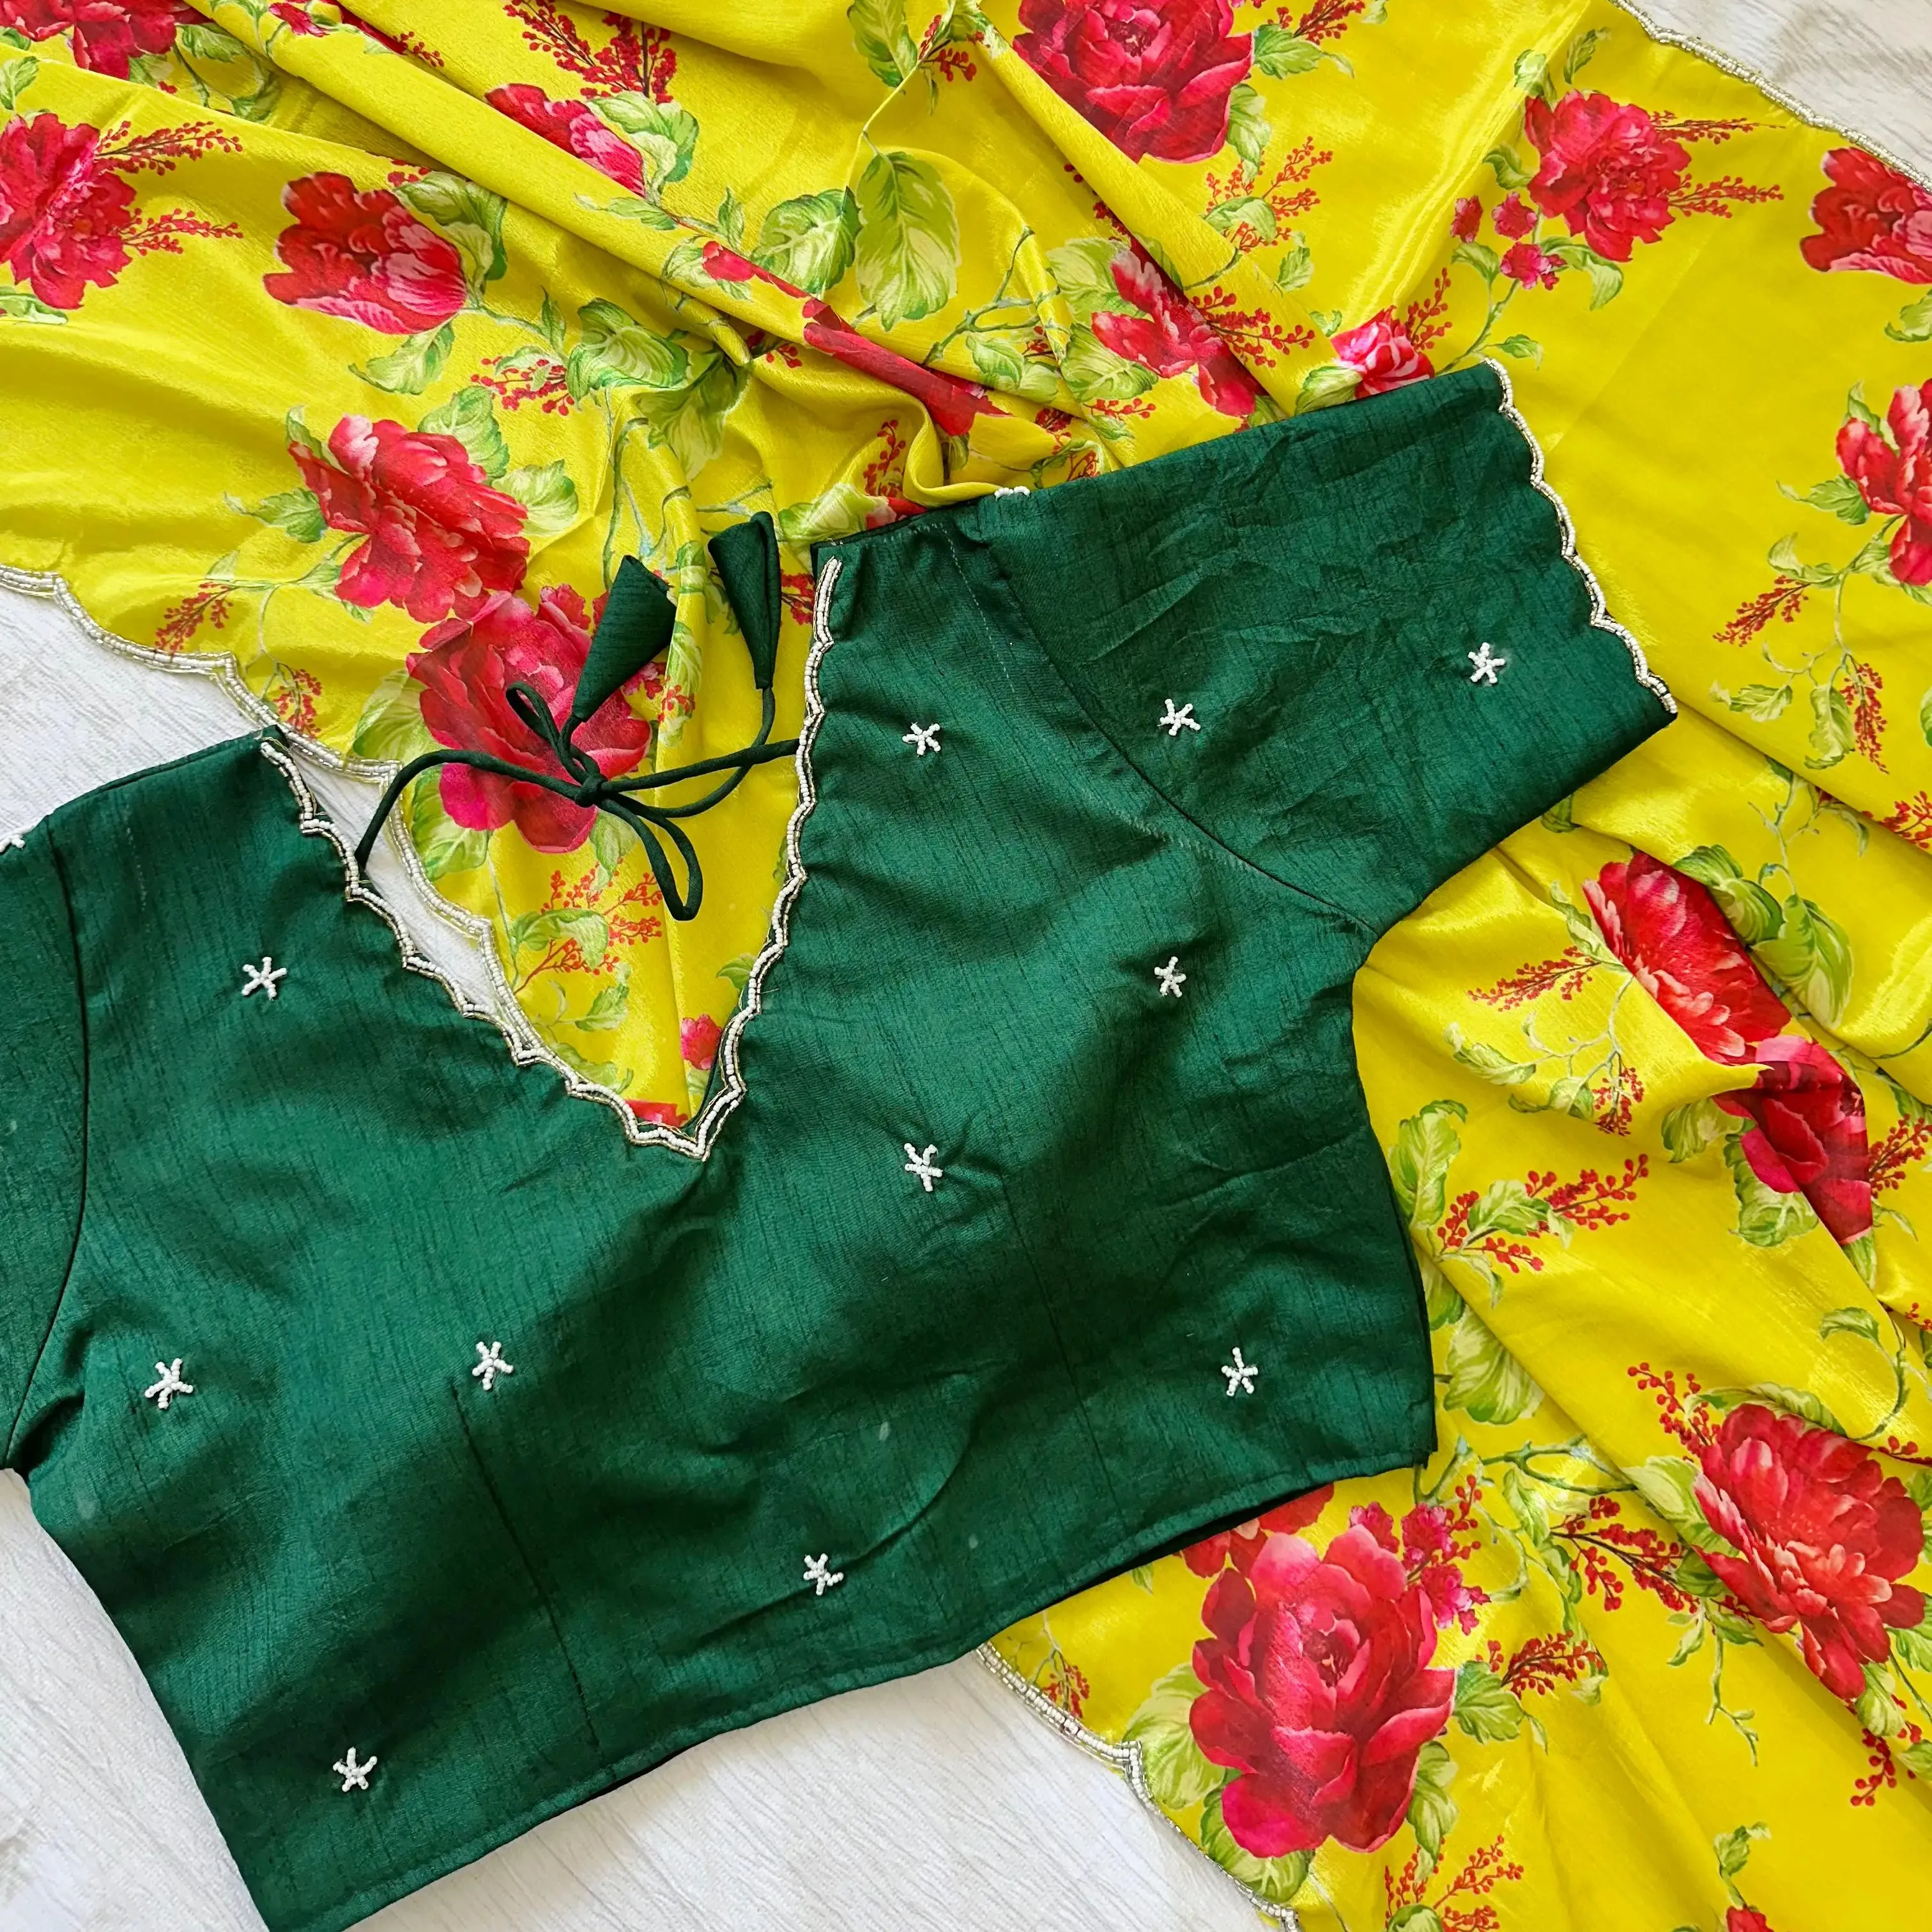 Capa de Saree macia e de seda com estampa bonita por todo o lado com roupas artesanais indianas e paquistanesas, imperdível para esta temporada